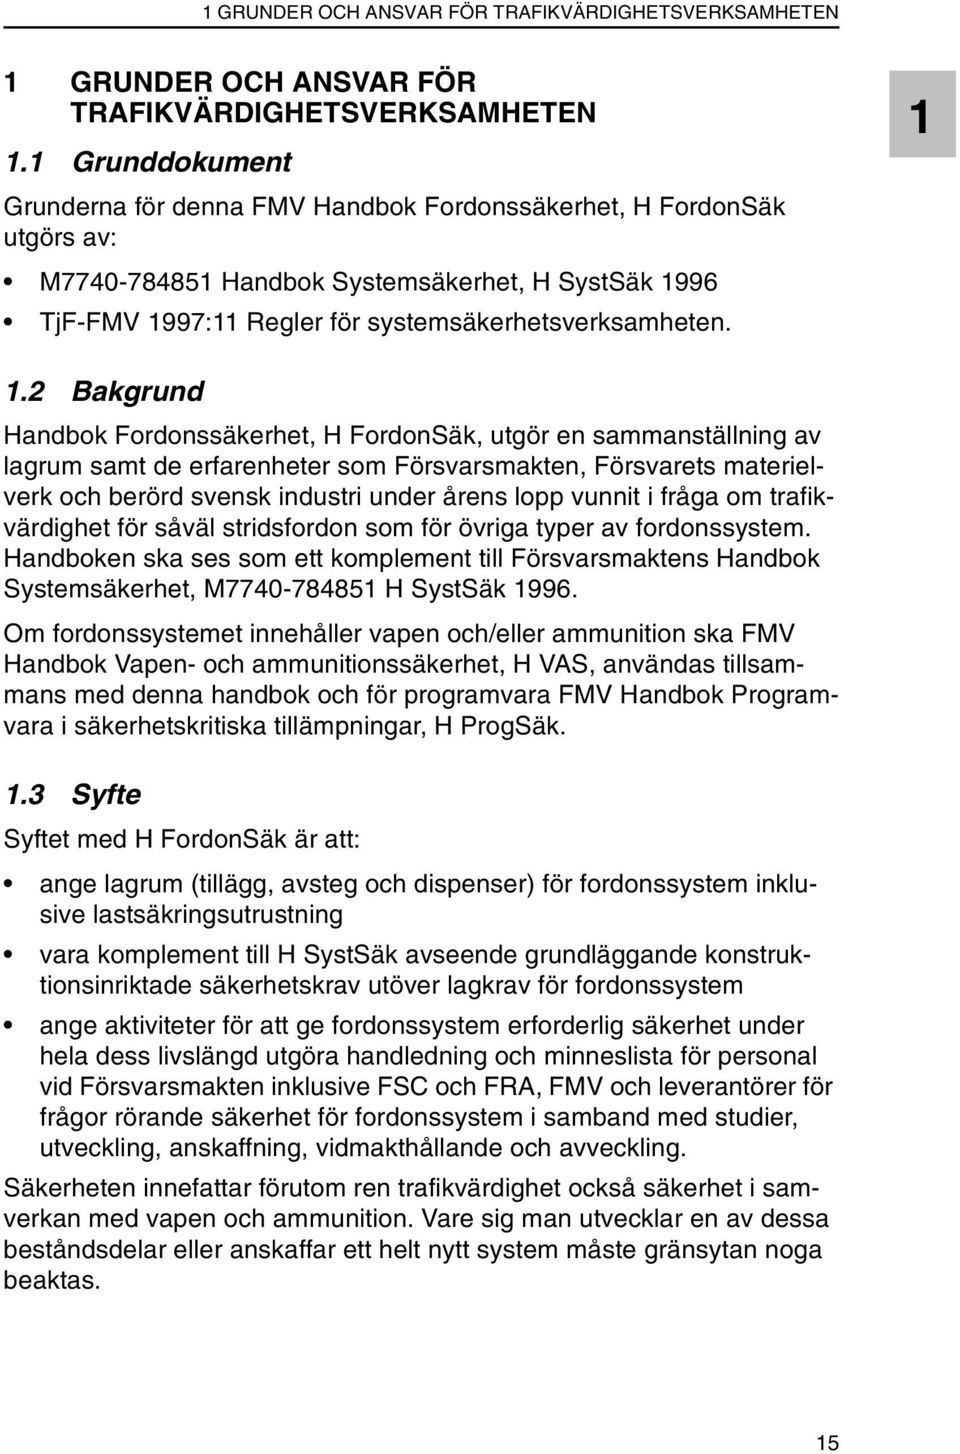 2 Bakgrund Handbok Fordonssäkerhet, H FordonSäk, utgör en sammanställning av lagrum samt de erfarenheter som Försvarsmakten, Försvarets materielverk och berörd svensk industri under årens lopp vunnit